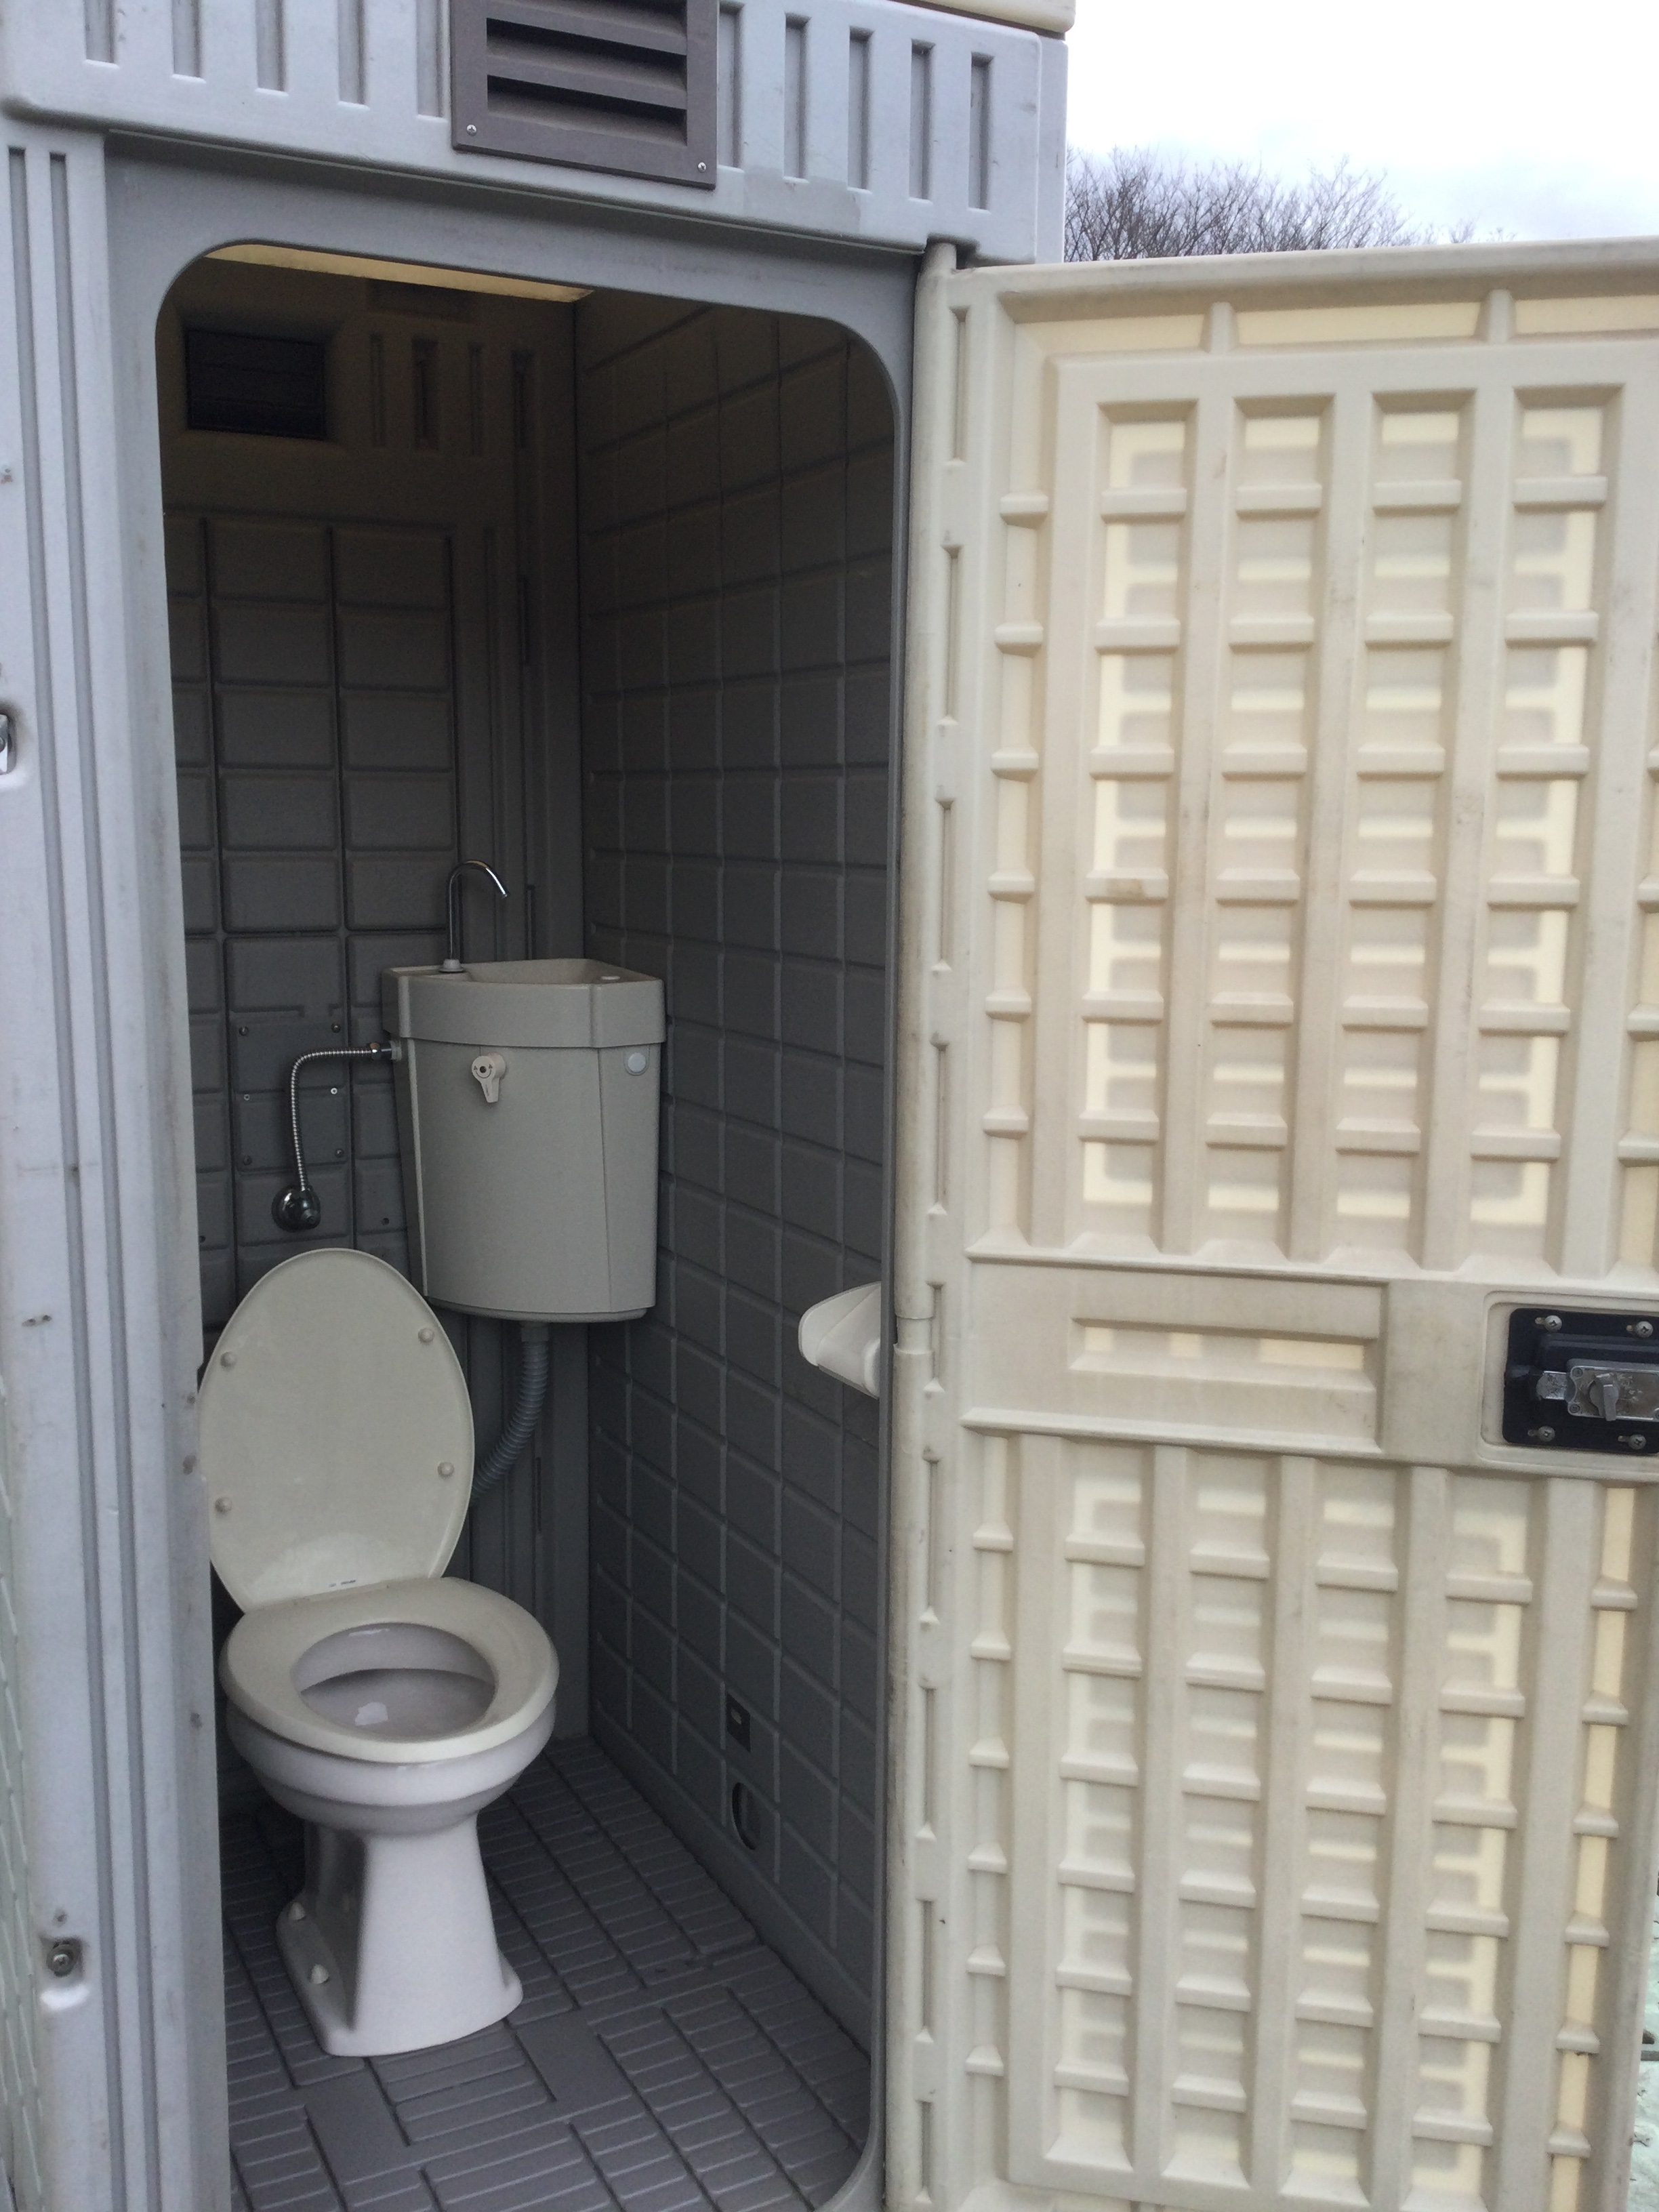 アウトレット　1.4坪　ハウス型トイレ　簡易水洗式　給排水工事不要